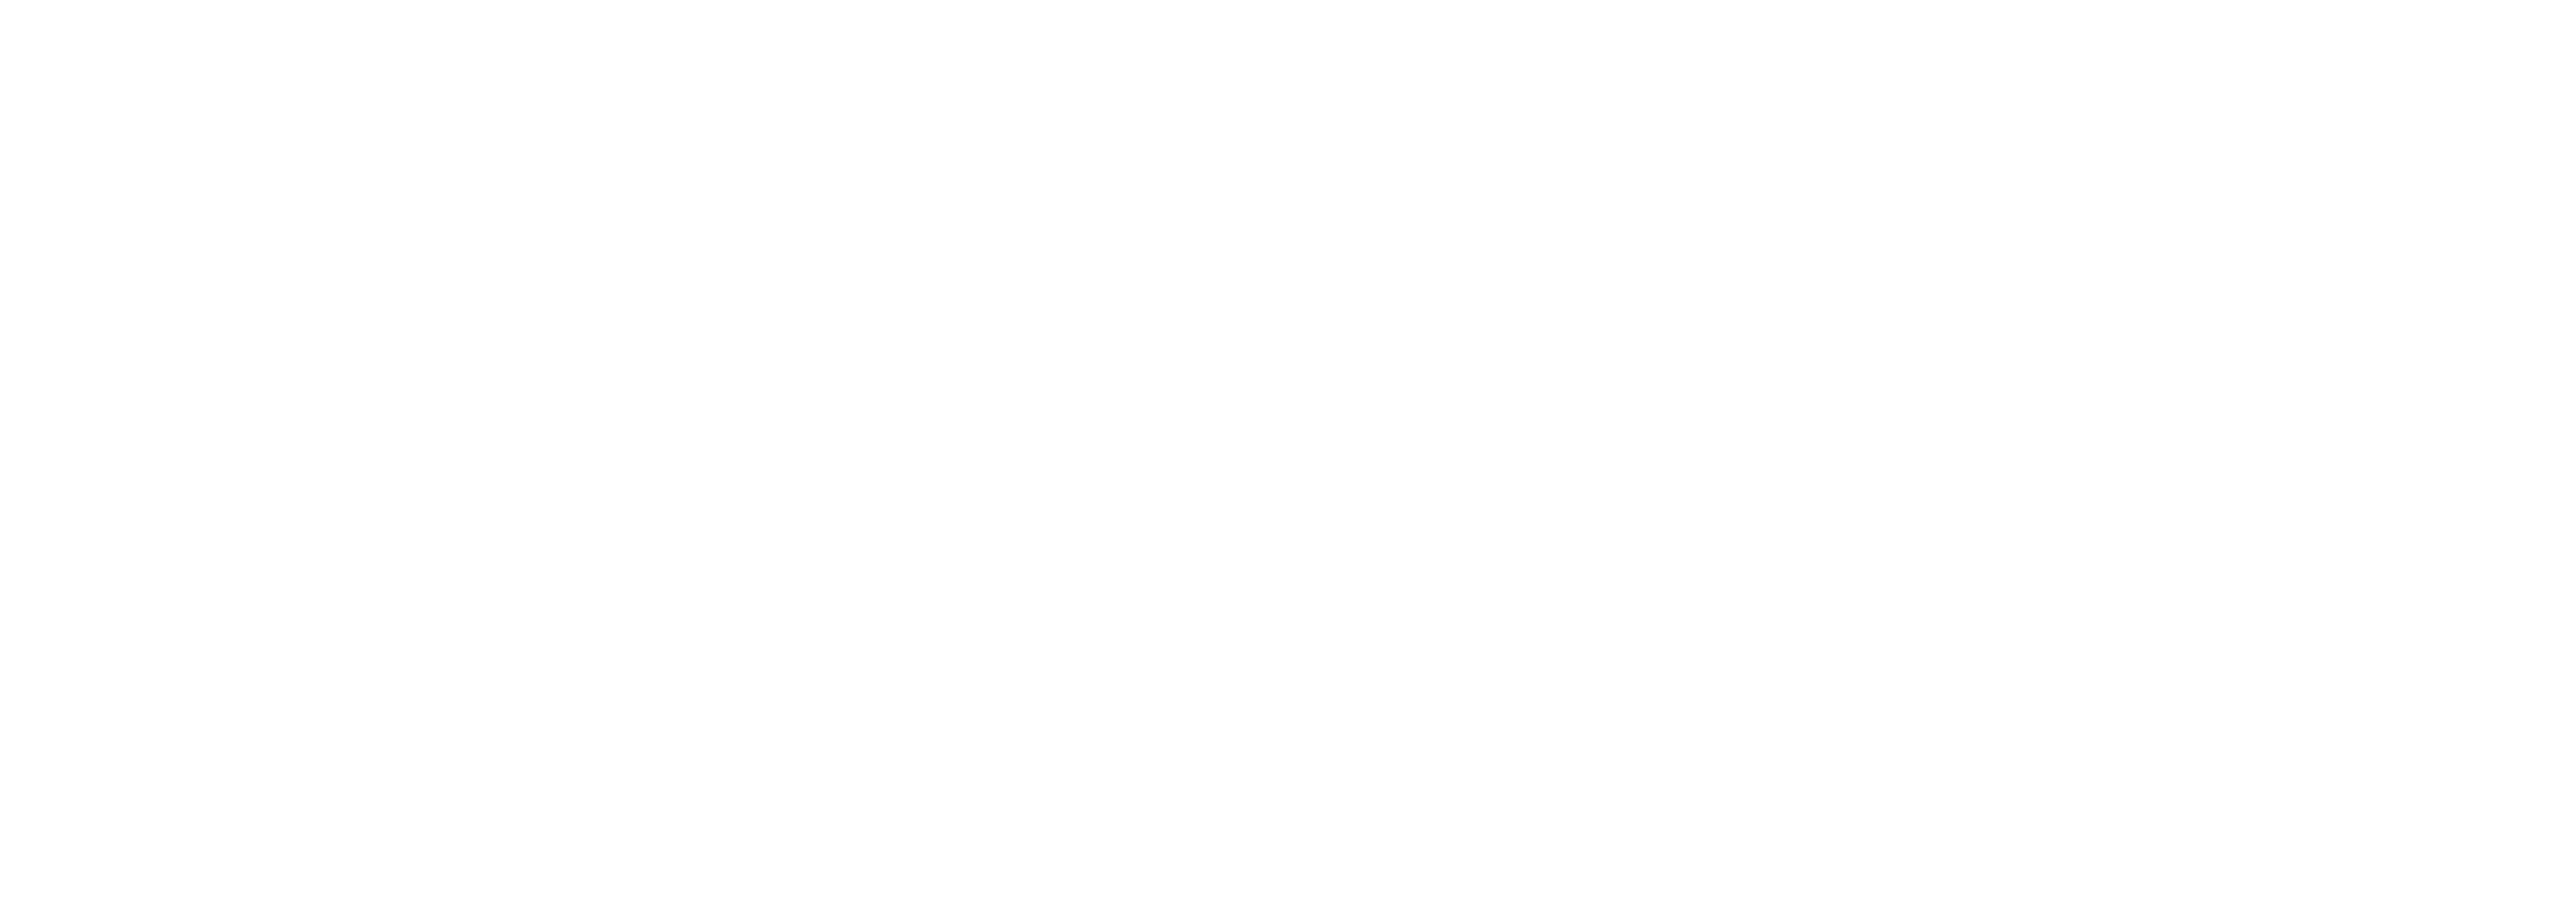 Visit the Mellon Foundation